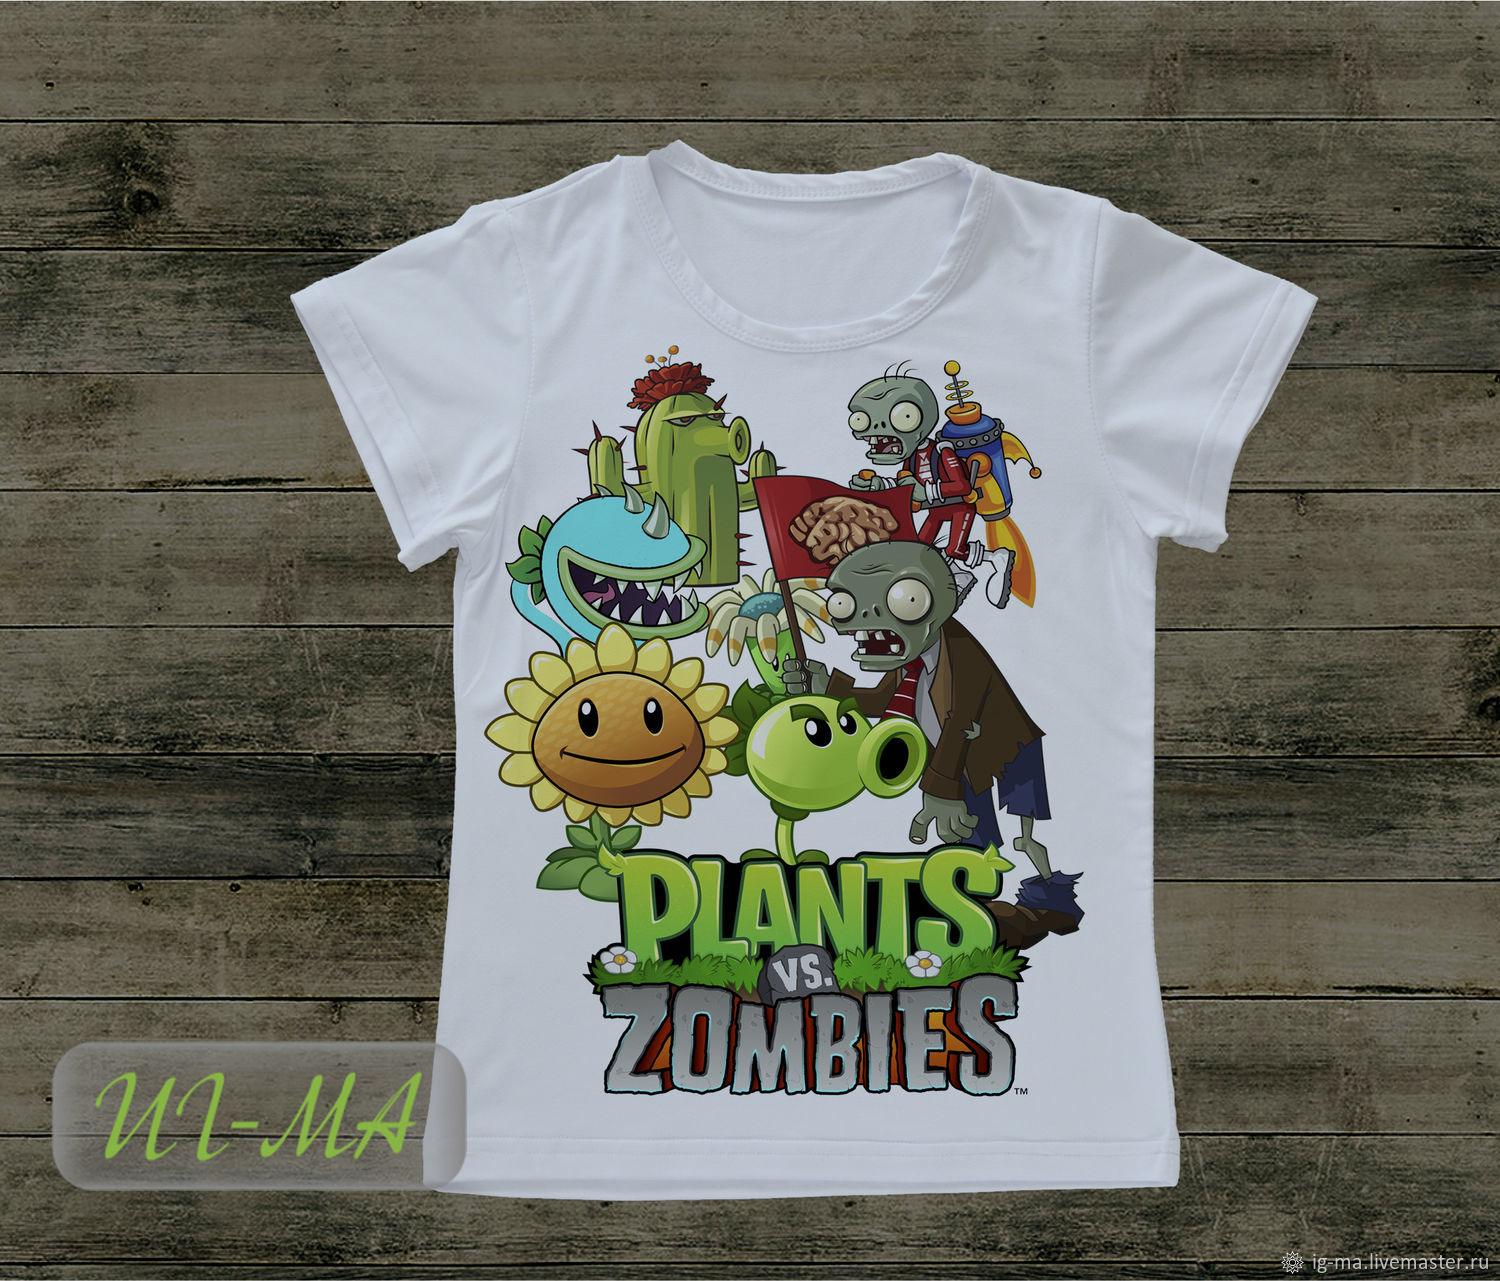 Купить футболку с зомби – футболок в интернет магазине